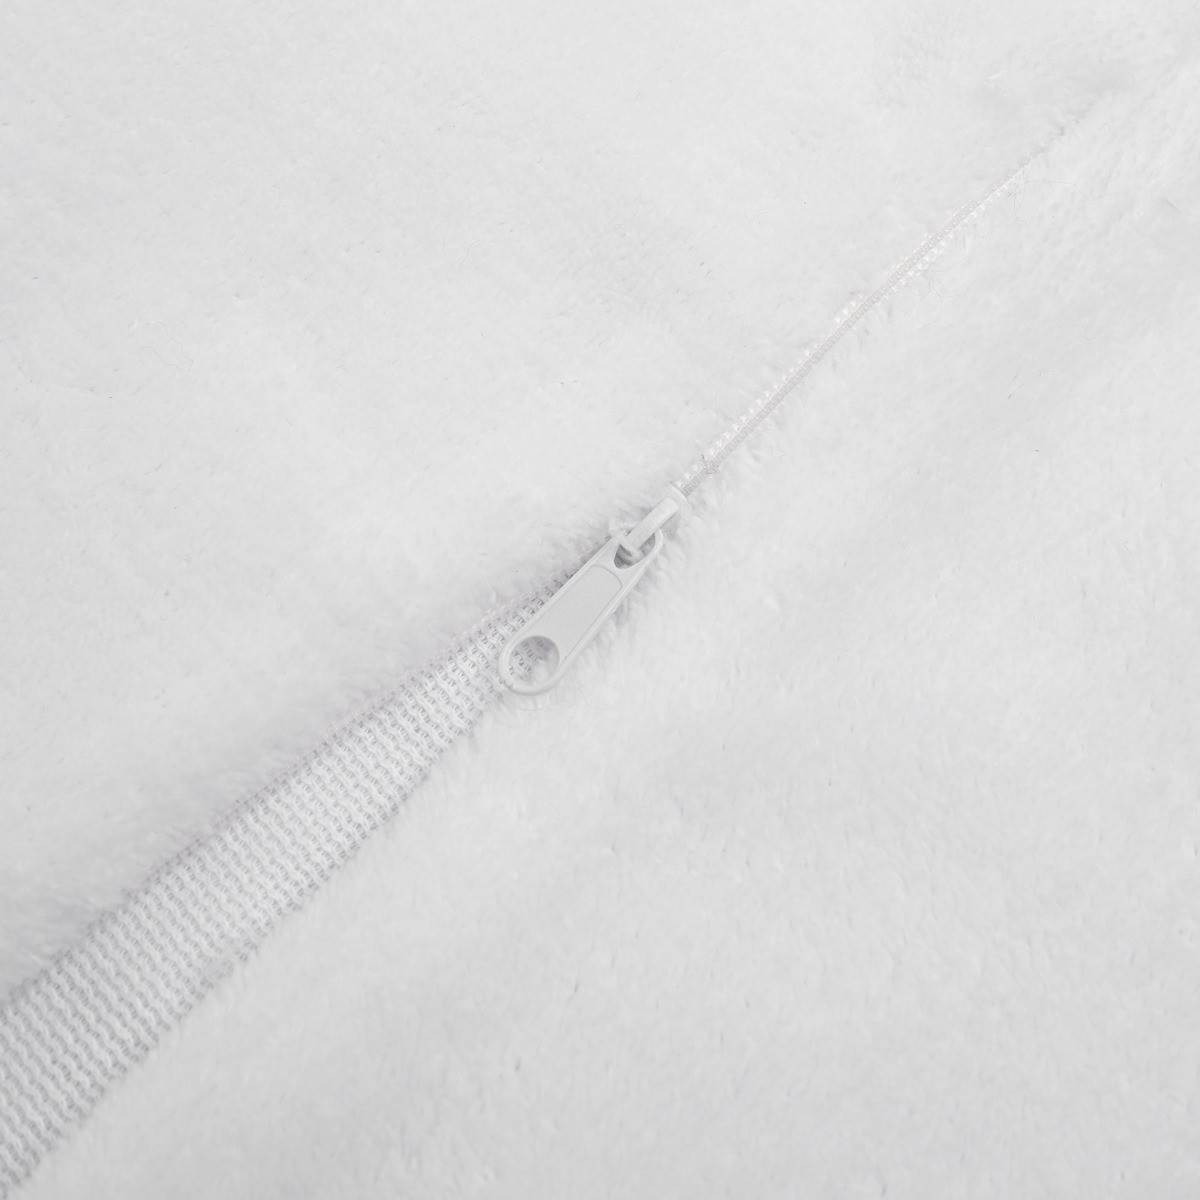 Sienna 2 Pack Faux Mongolian Fur Cushion Covers, White - 45 x 45cm>